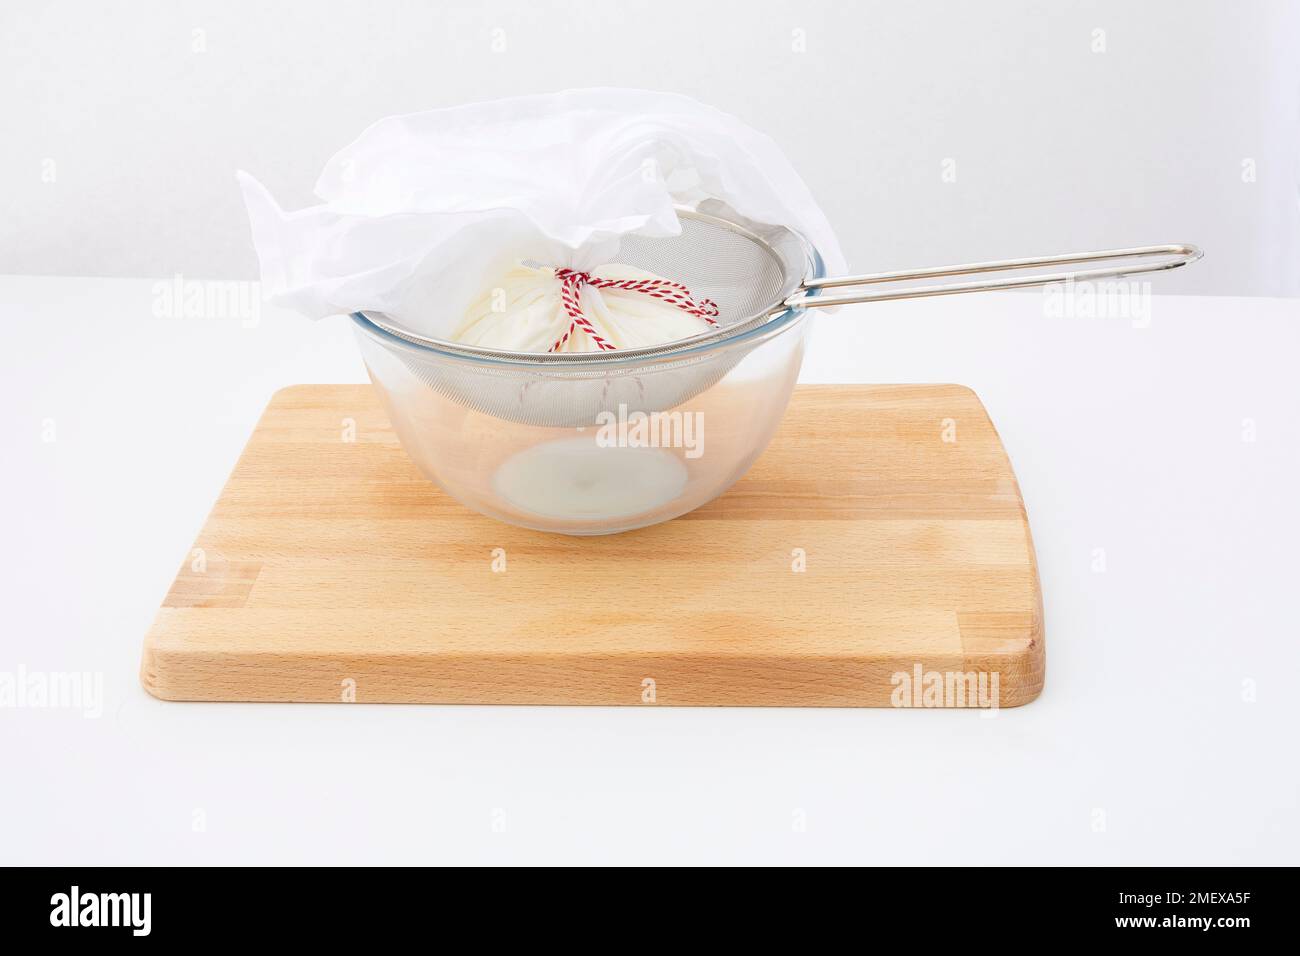 Préparation de Labneh - étape 2 - Cheese Cloth et assis dans le tamis, yaourt liquide s'égoutter dans le bol Banque D'Images